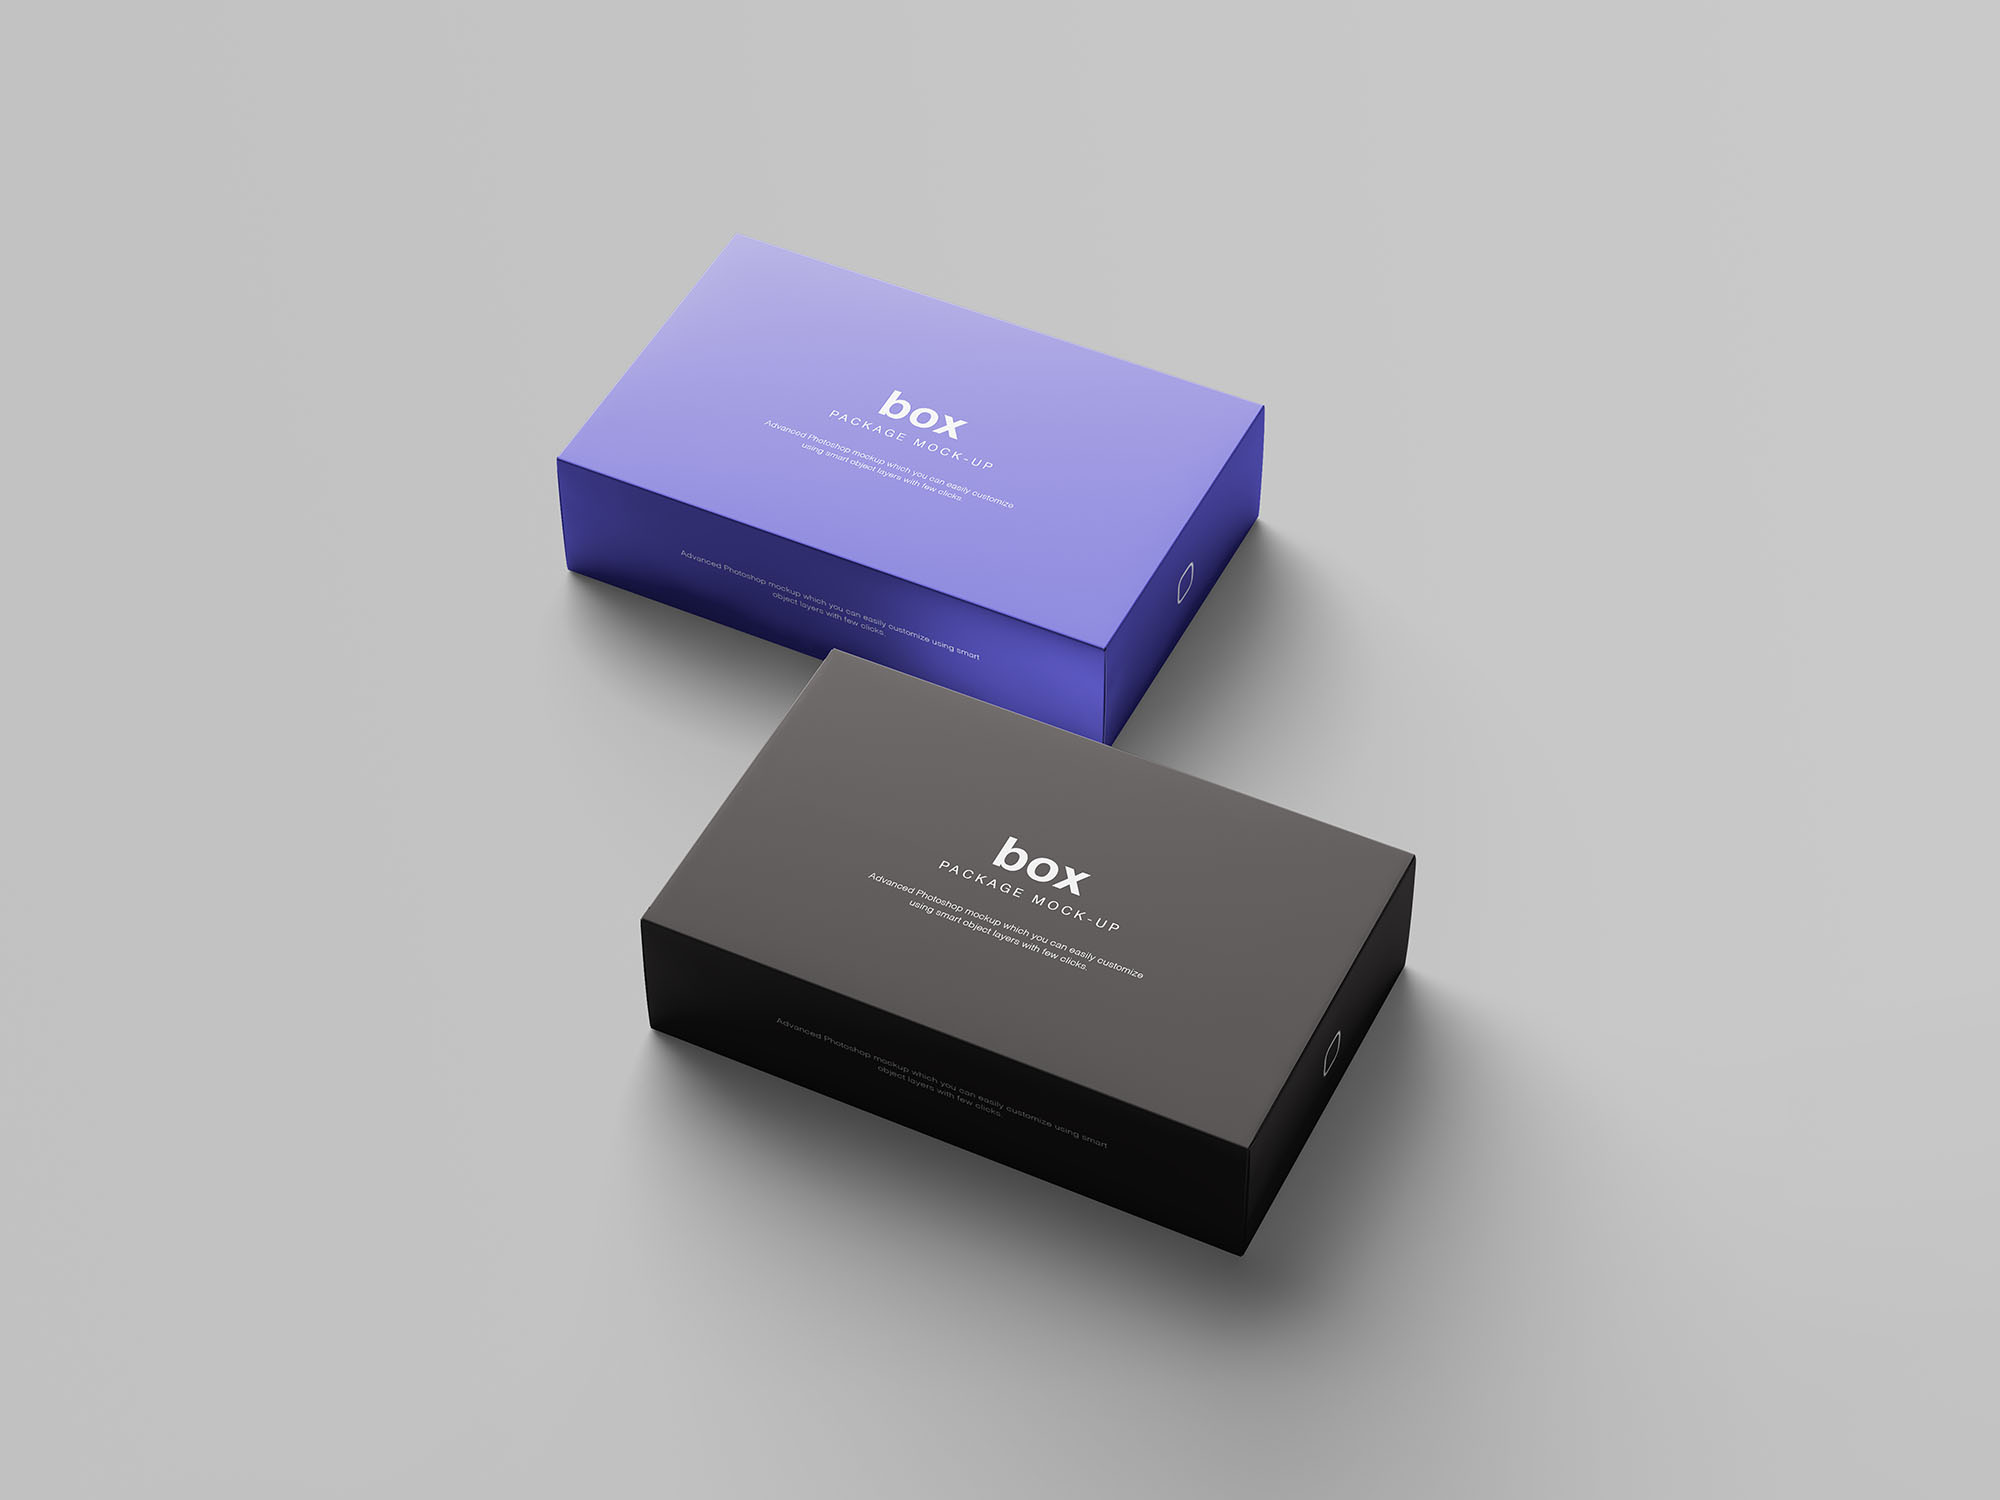 精品礼品/产品包装盒外观设计样机模板 Box Packaging Mockup插图(6)